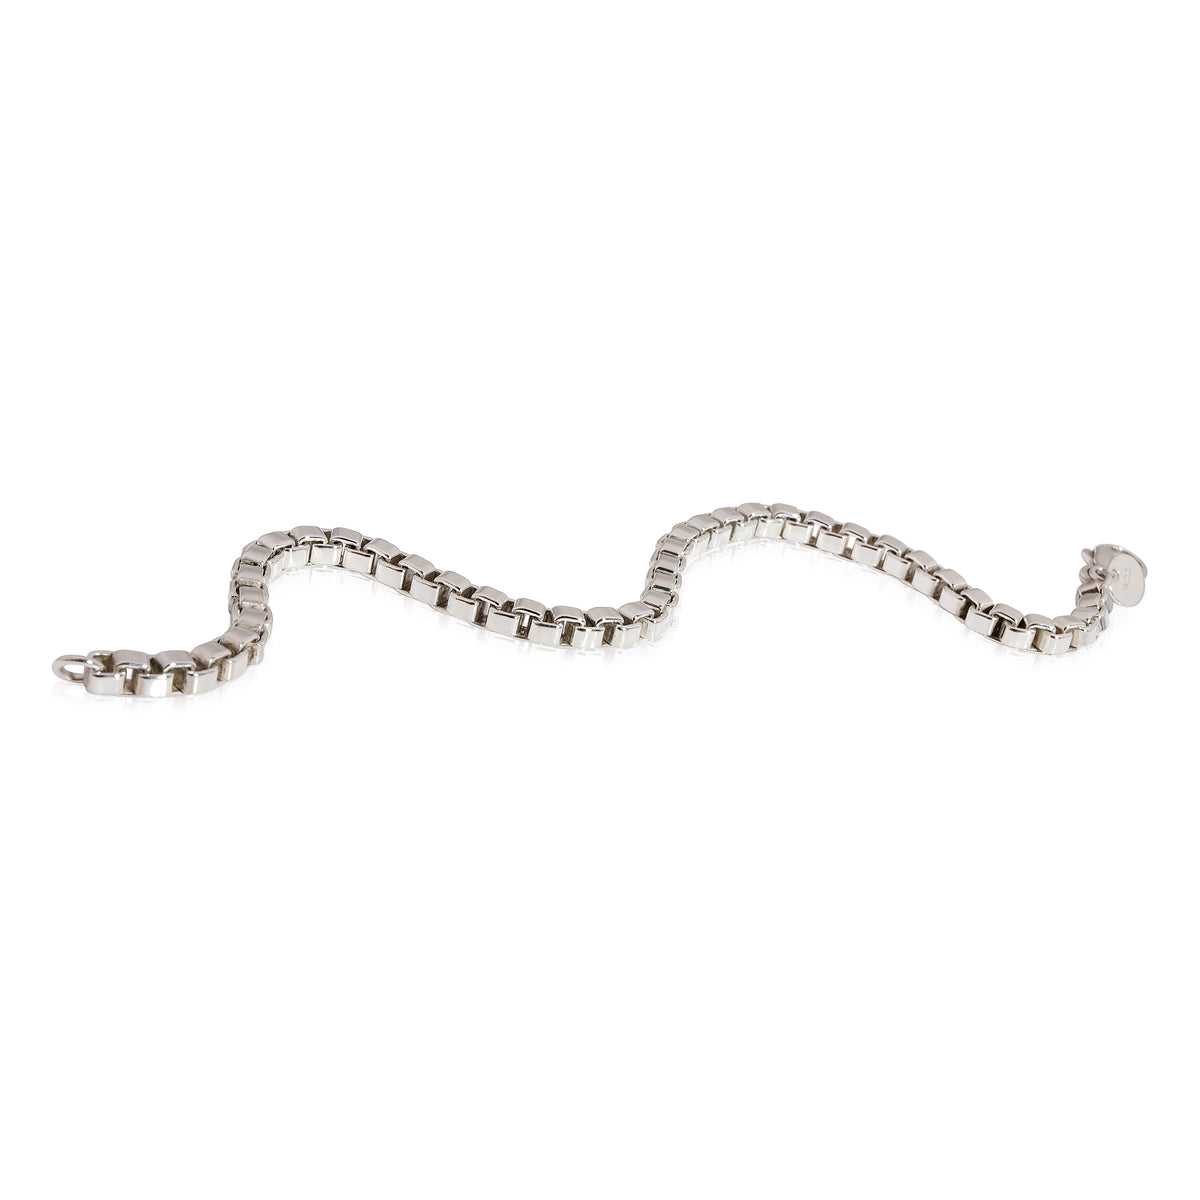 Tiffany & Co. Venetian Link Bracelet Sterling Silver